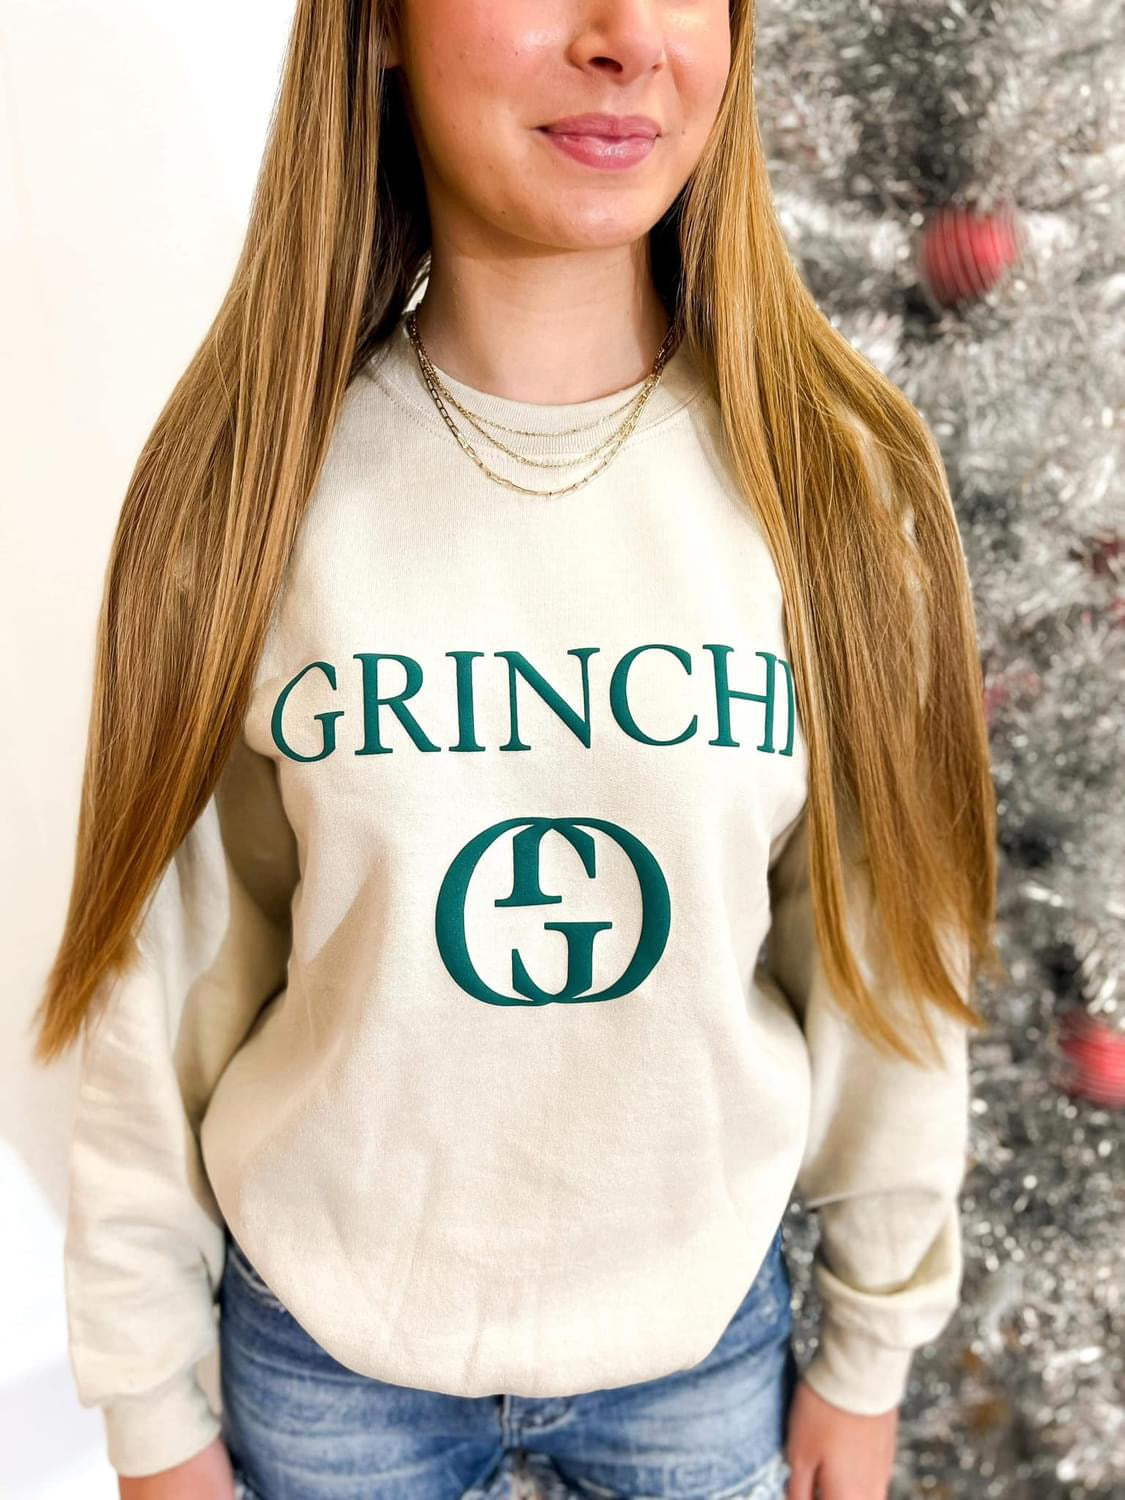 Grinchi sweatshirt